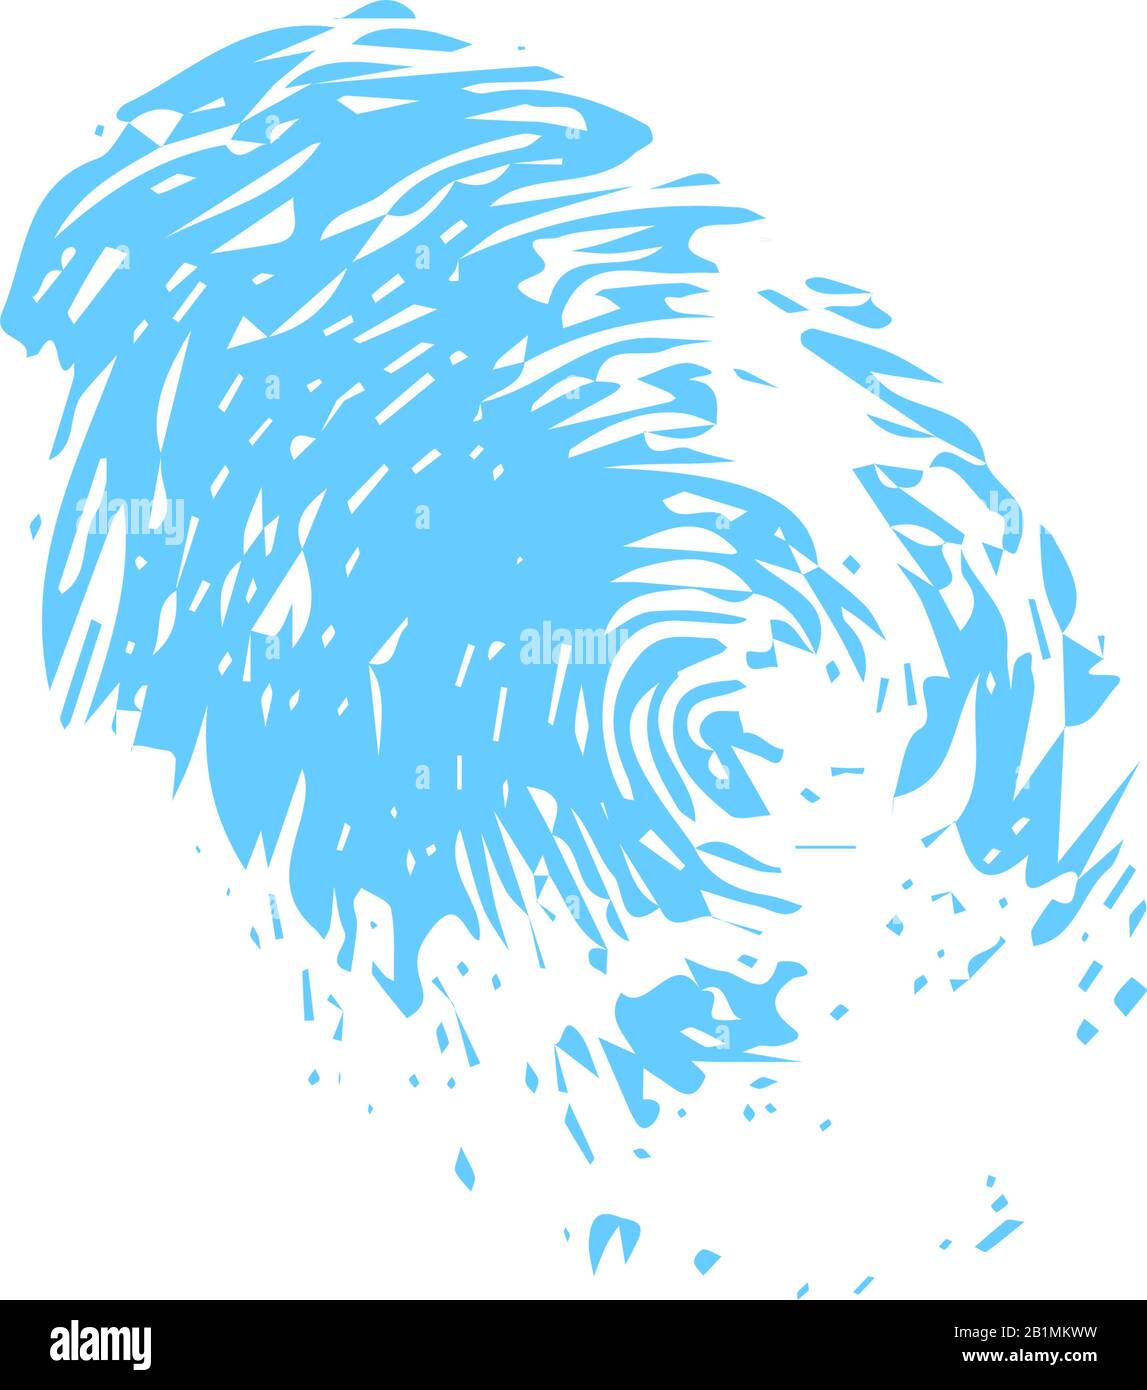 blue fingerprints isolated on white vector illustration Stock Vector